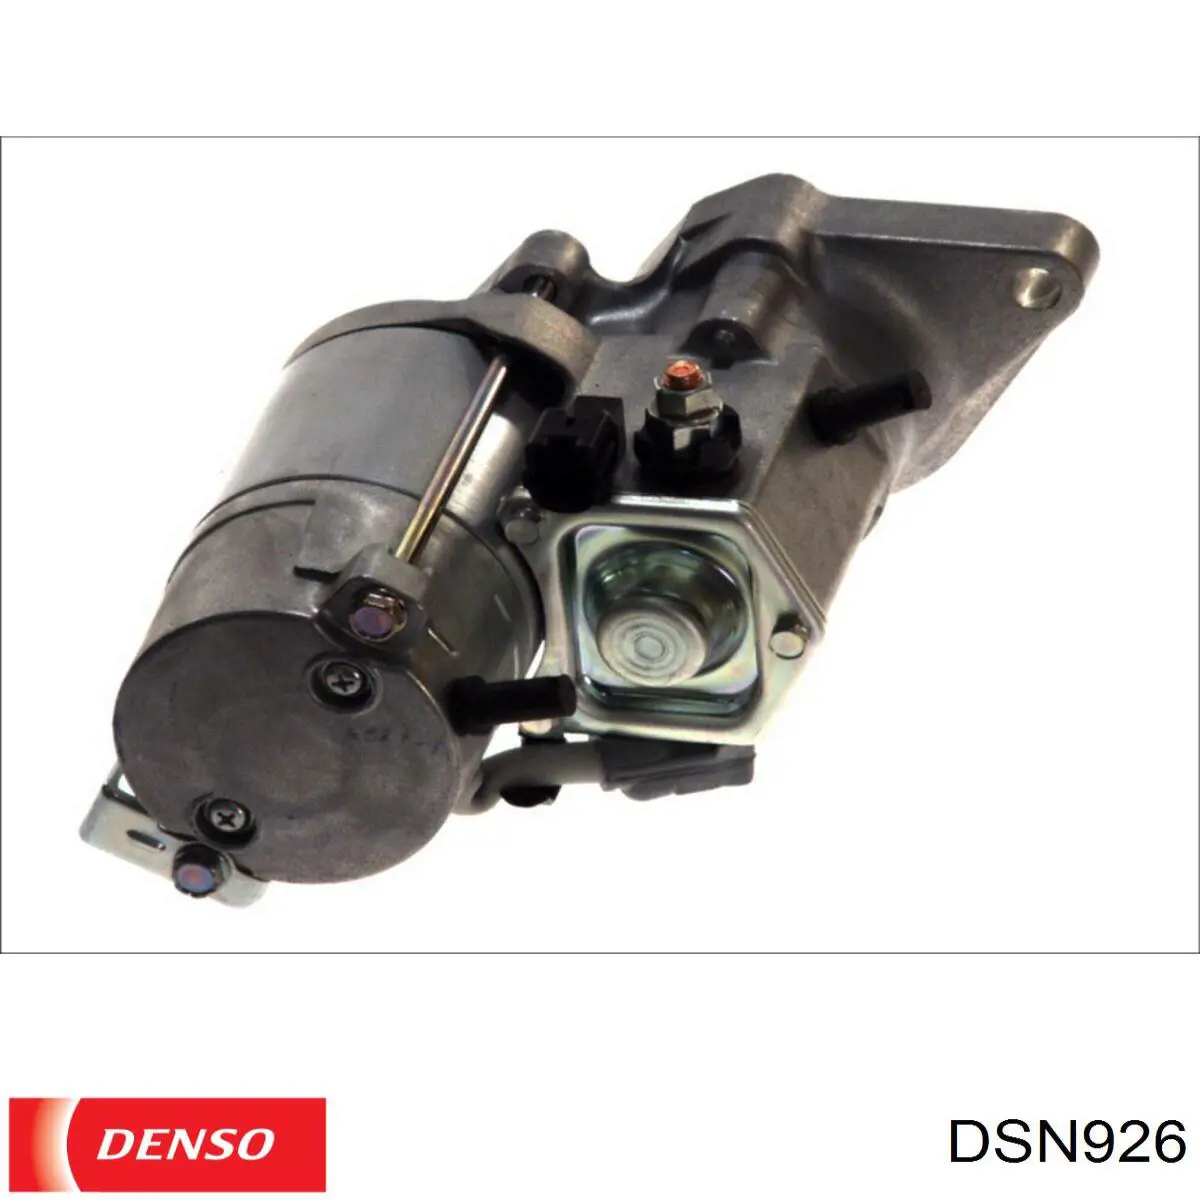 Motor de arranque DSN926 Denso